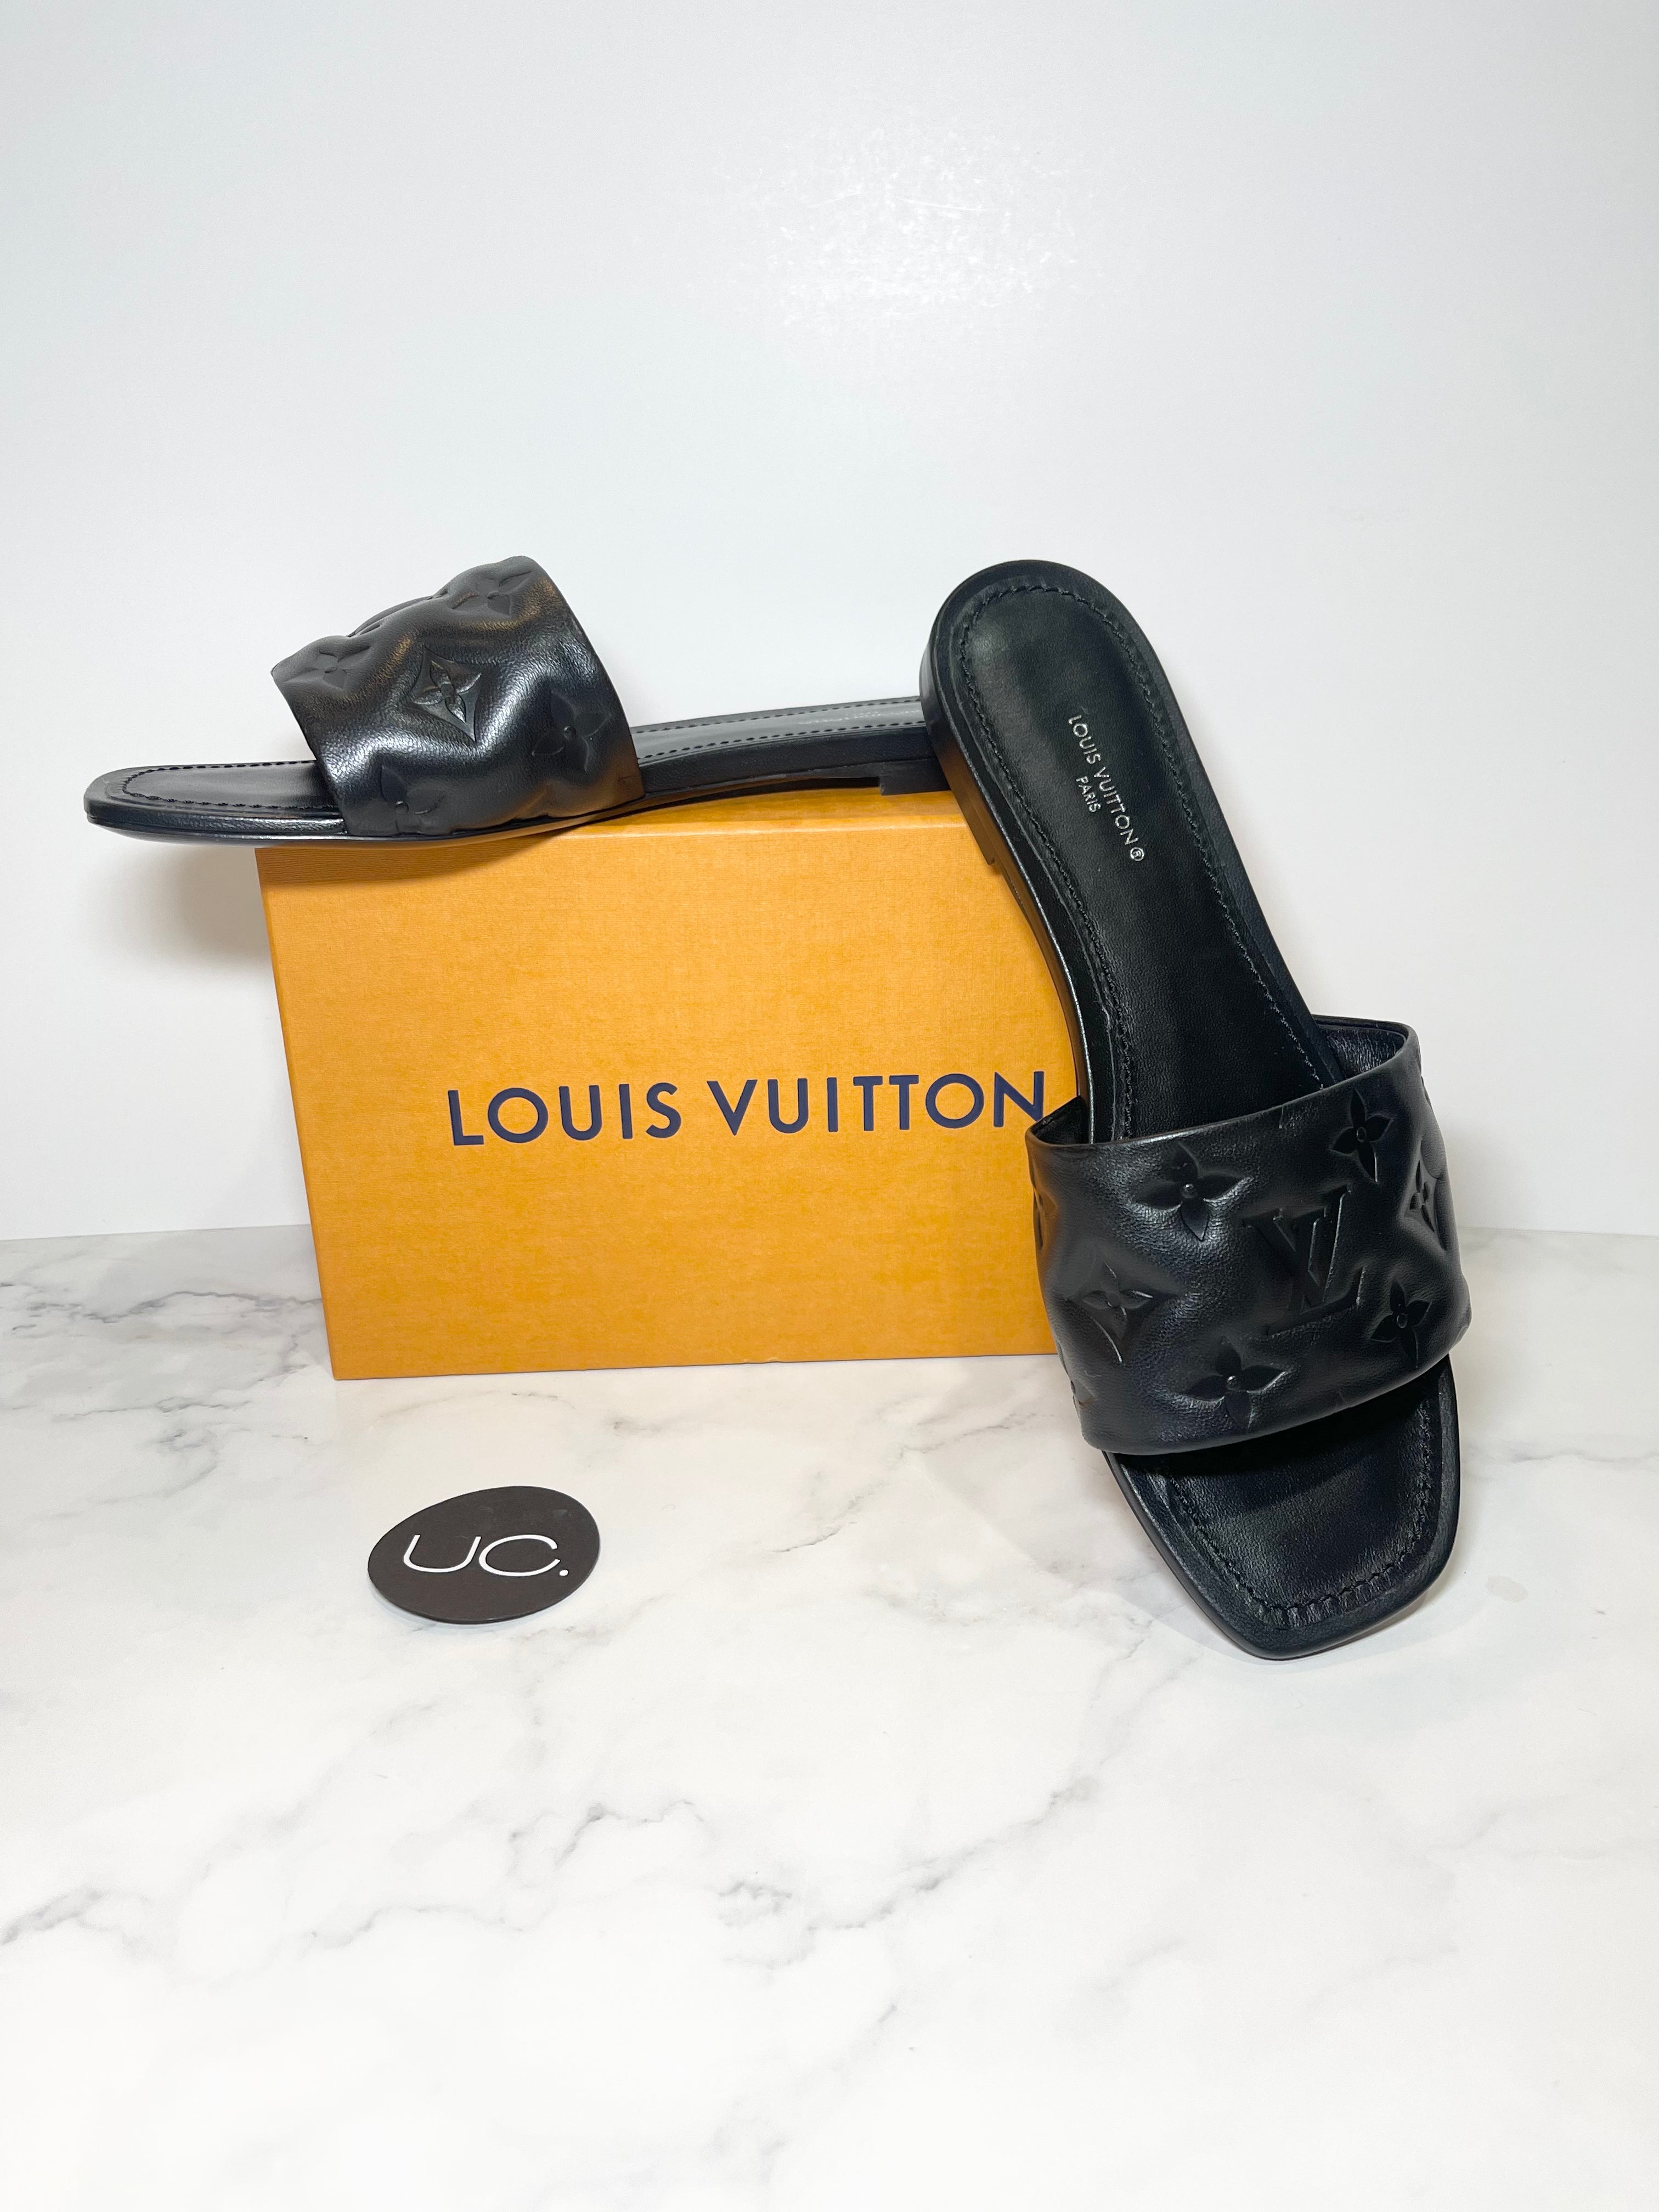 Louis Vuitton Revival Flat Mule